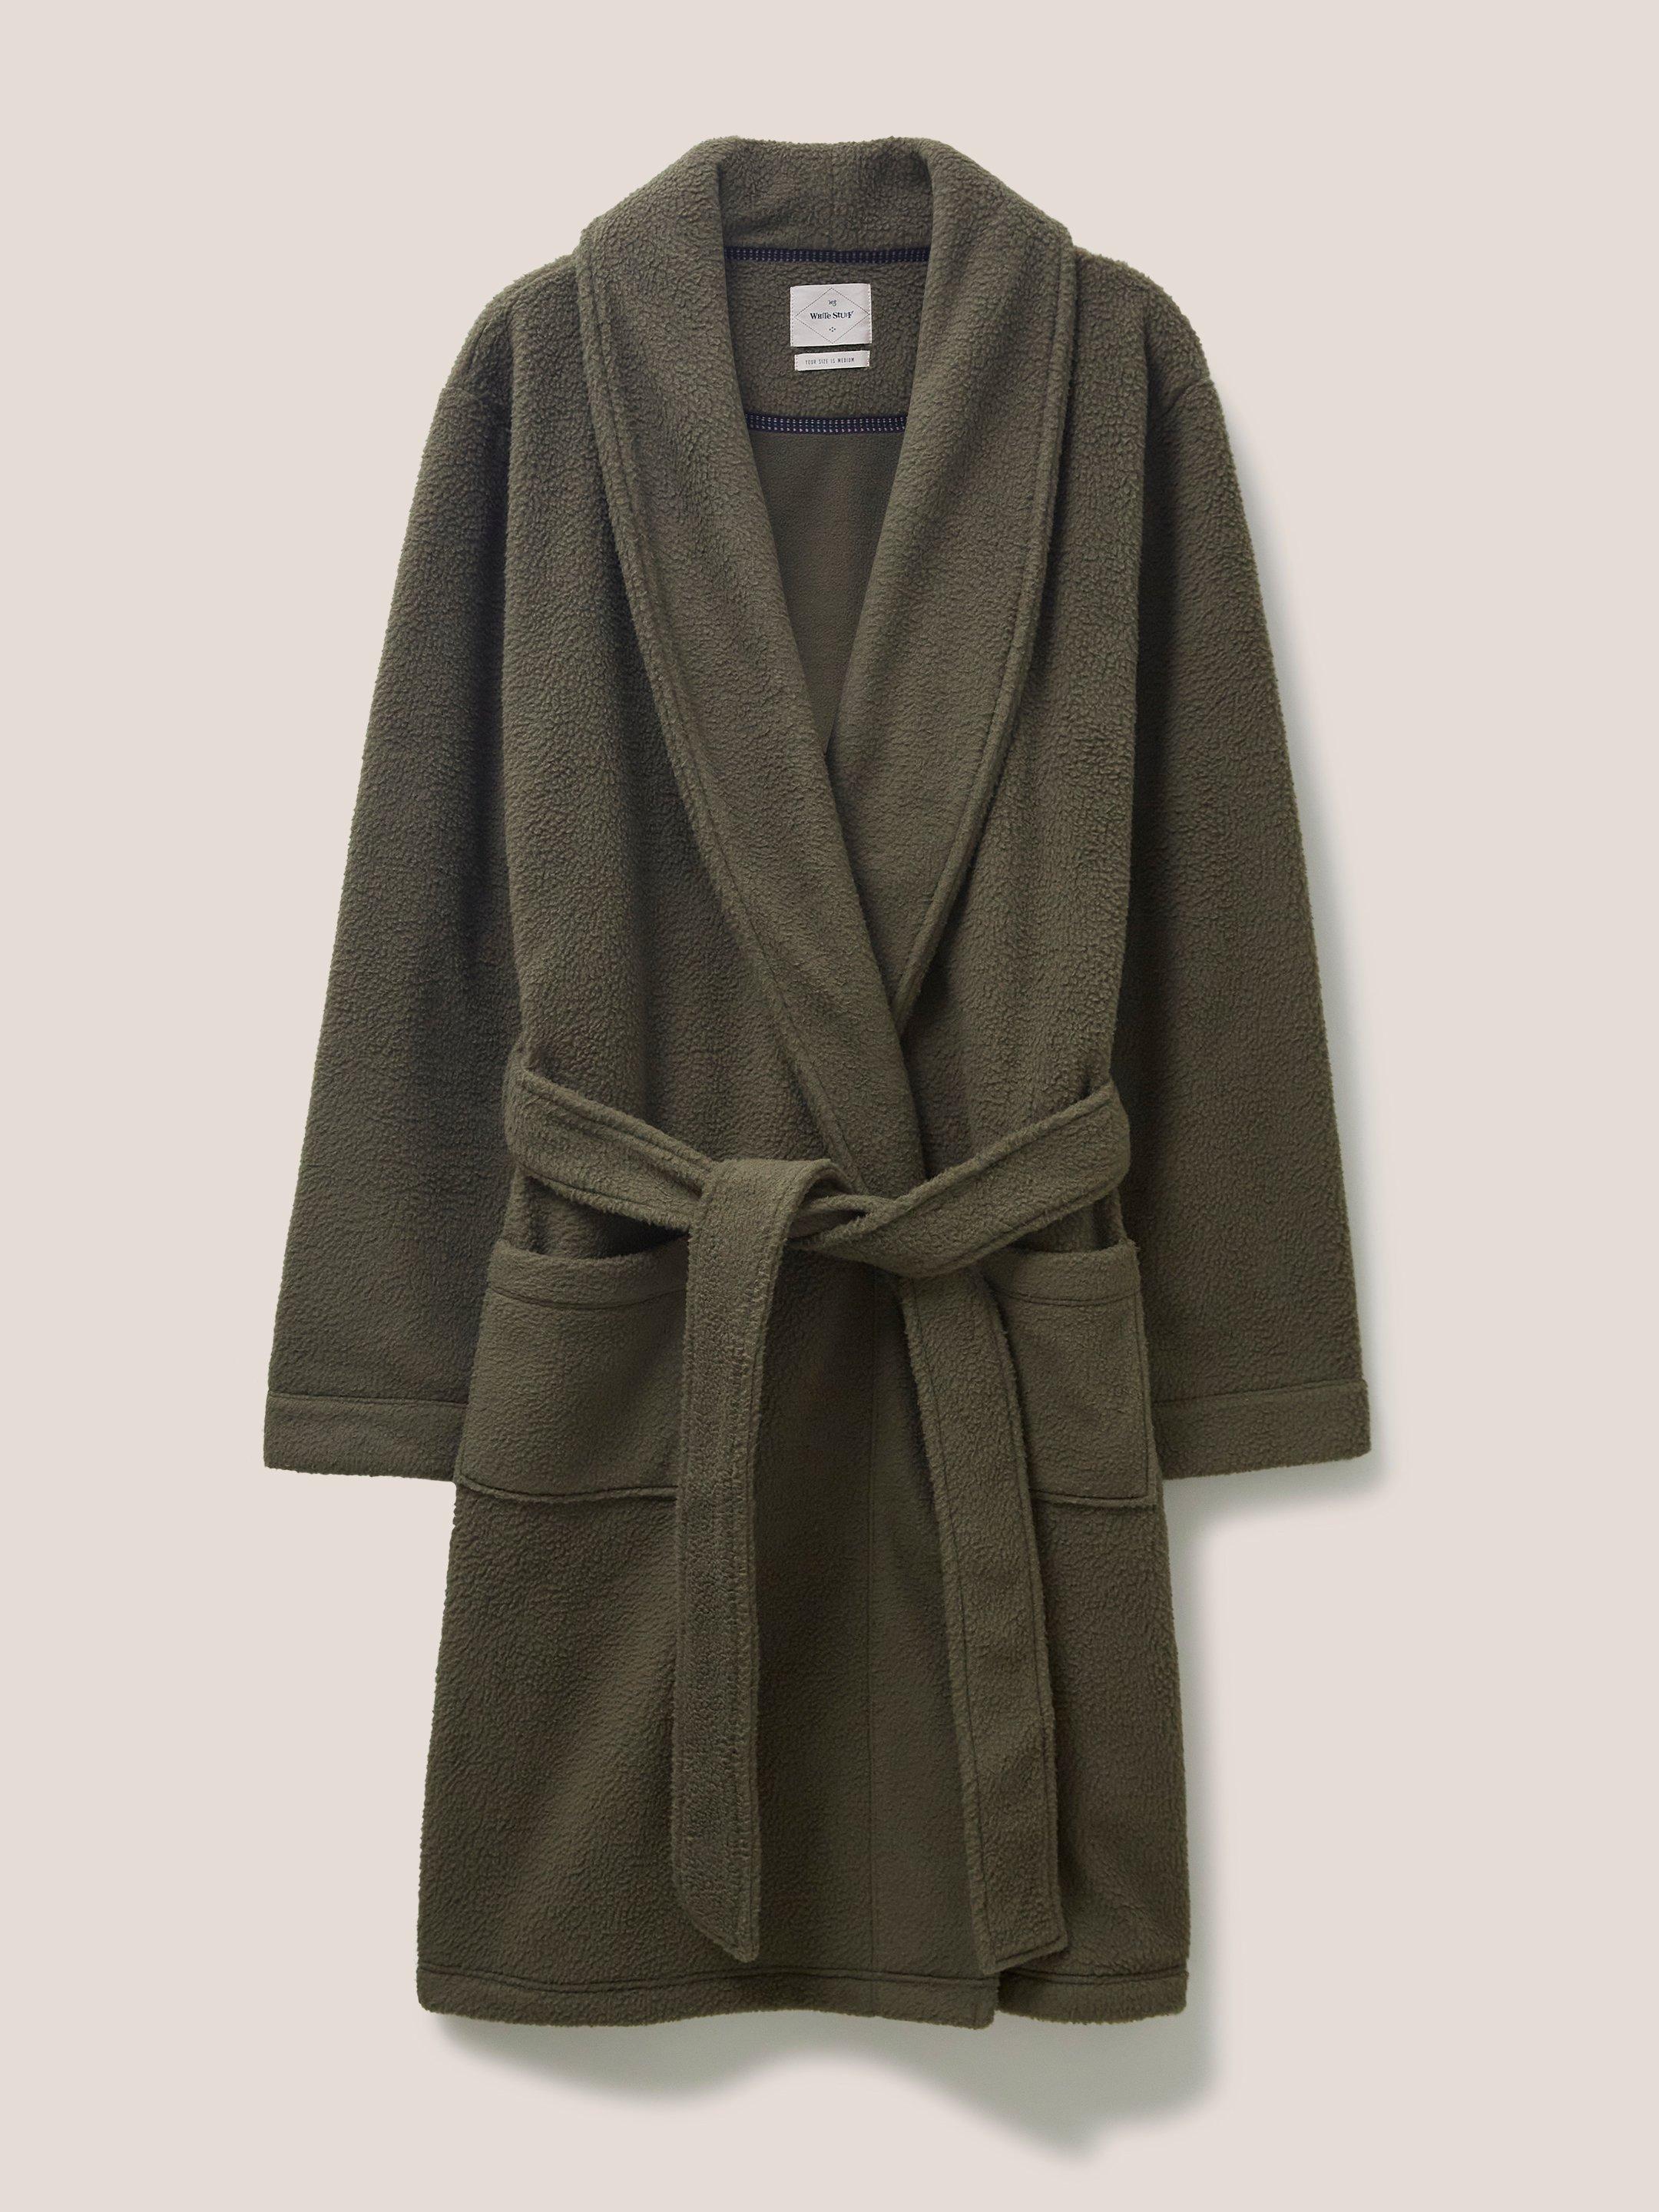 Kingham Robe in DK GREEN - FLAT FRONT